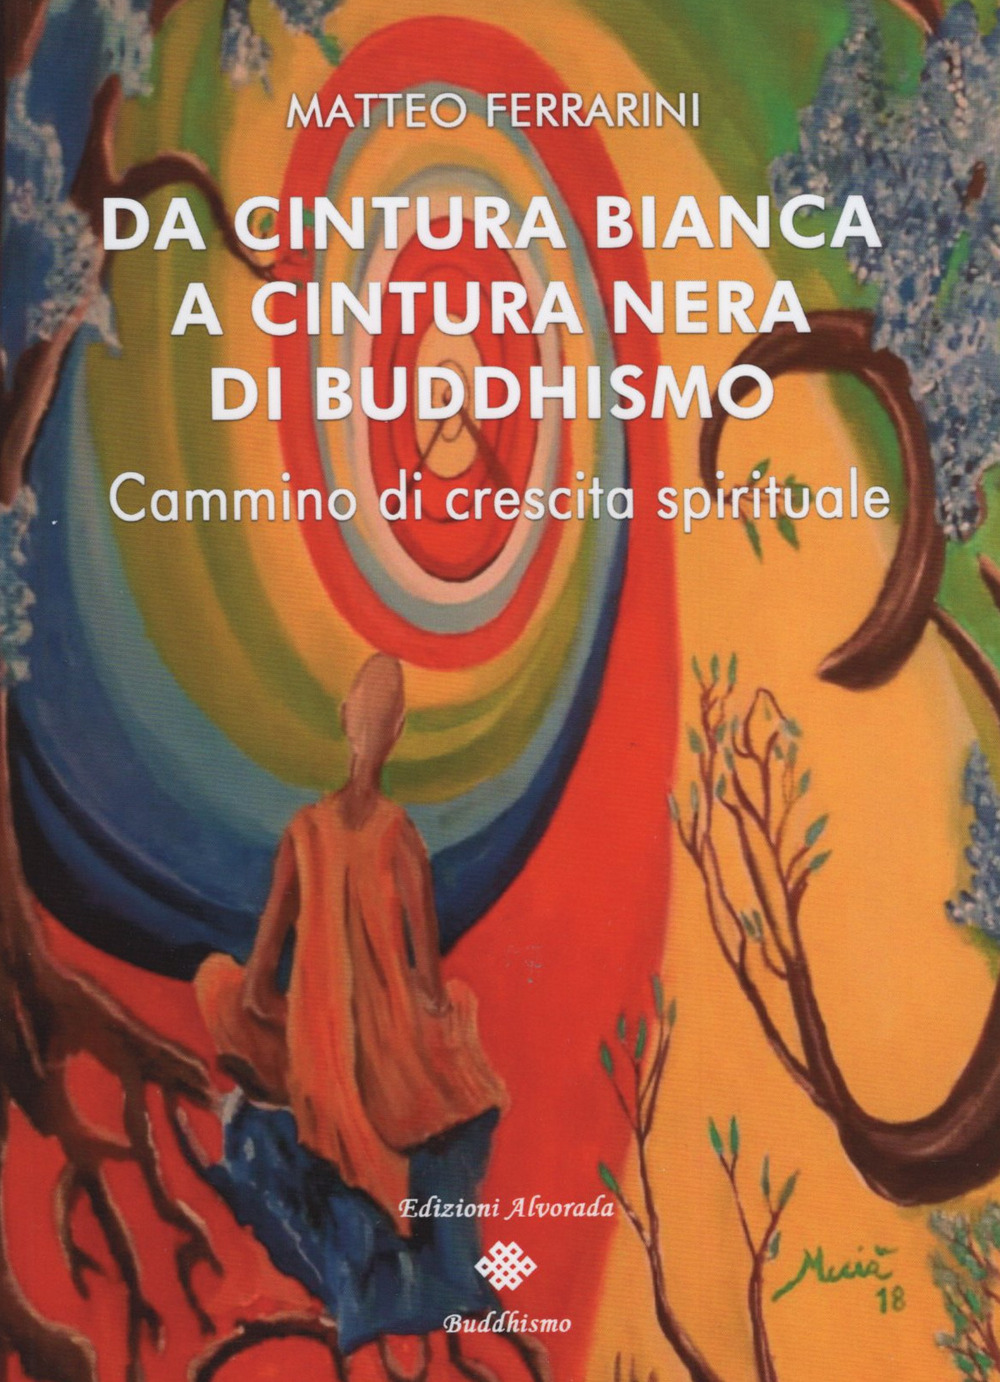 Matteo Ferrarini presenta “Da cintura bianca a cintura nera di buddhismo. Cammino di crescita spirituale”